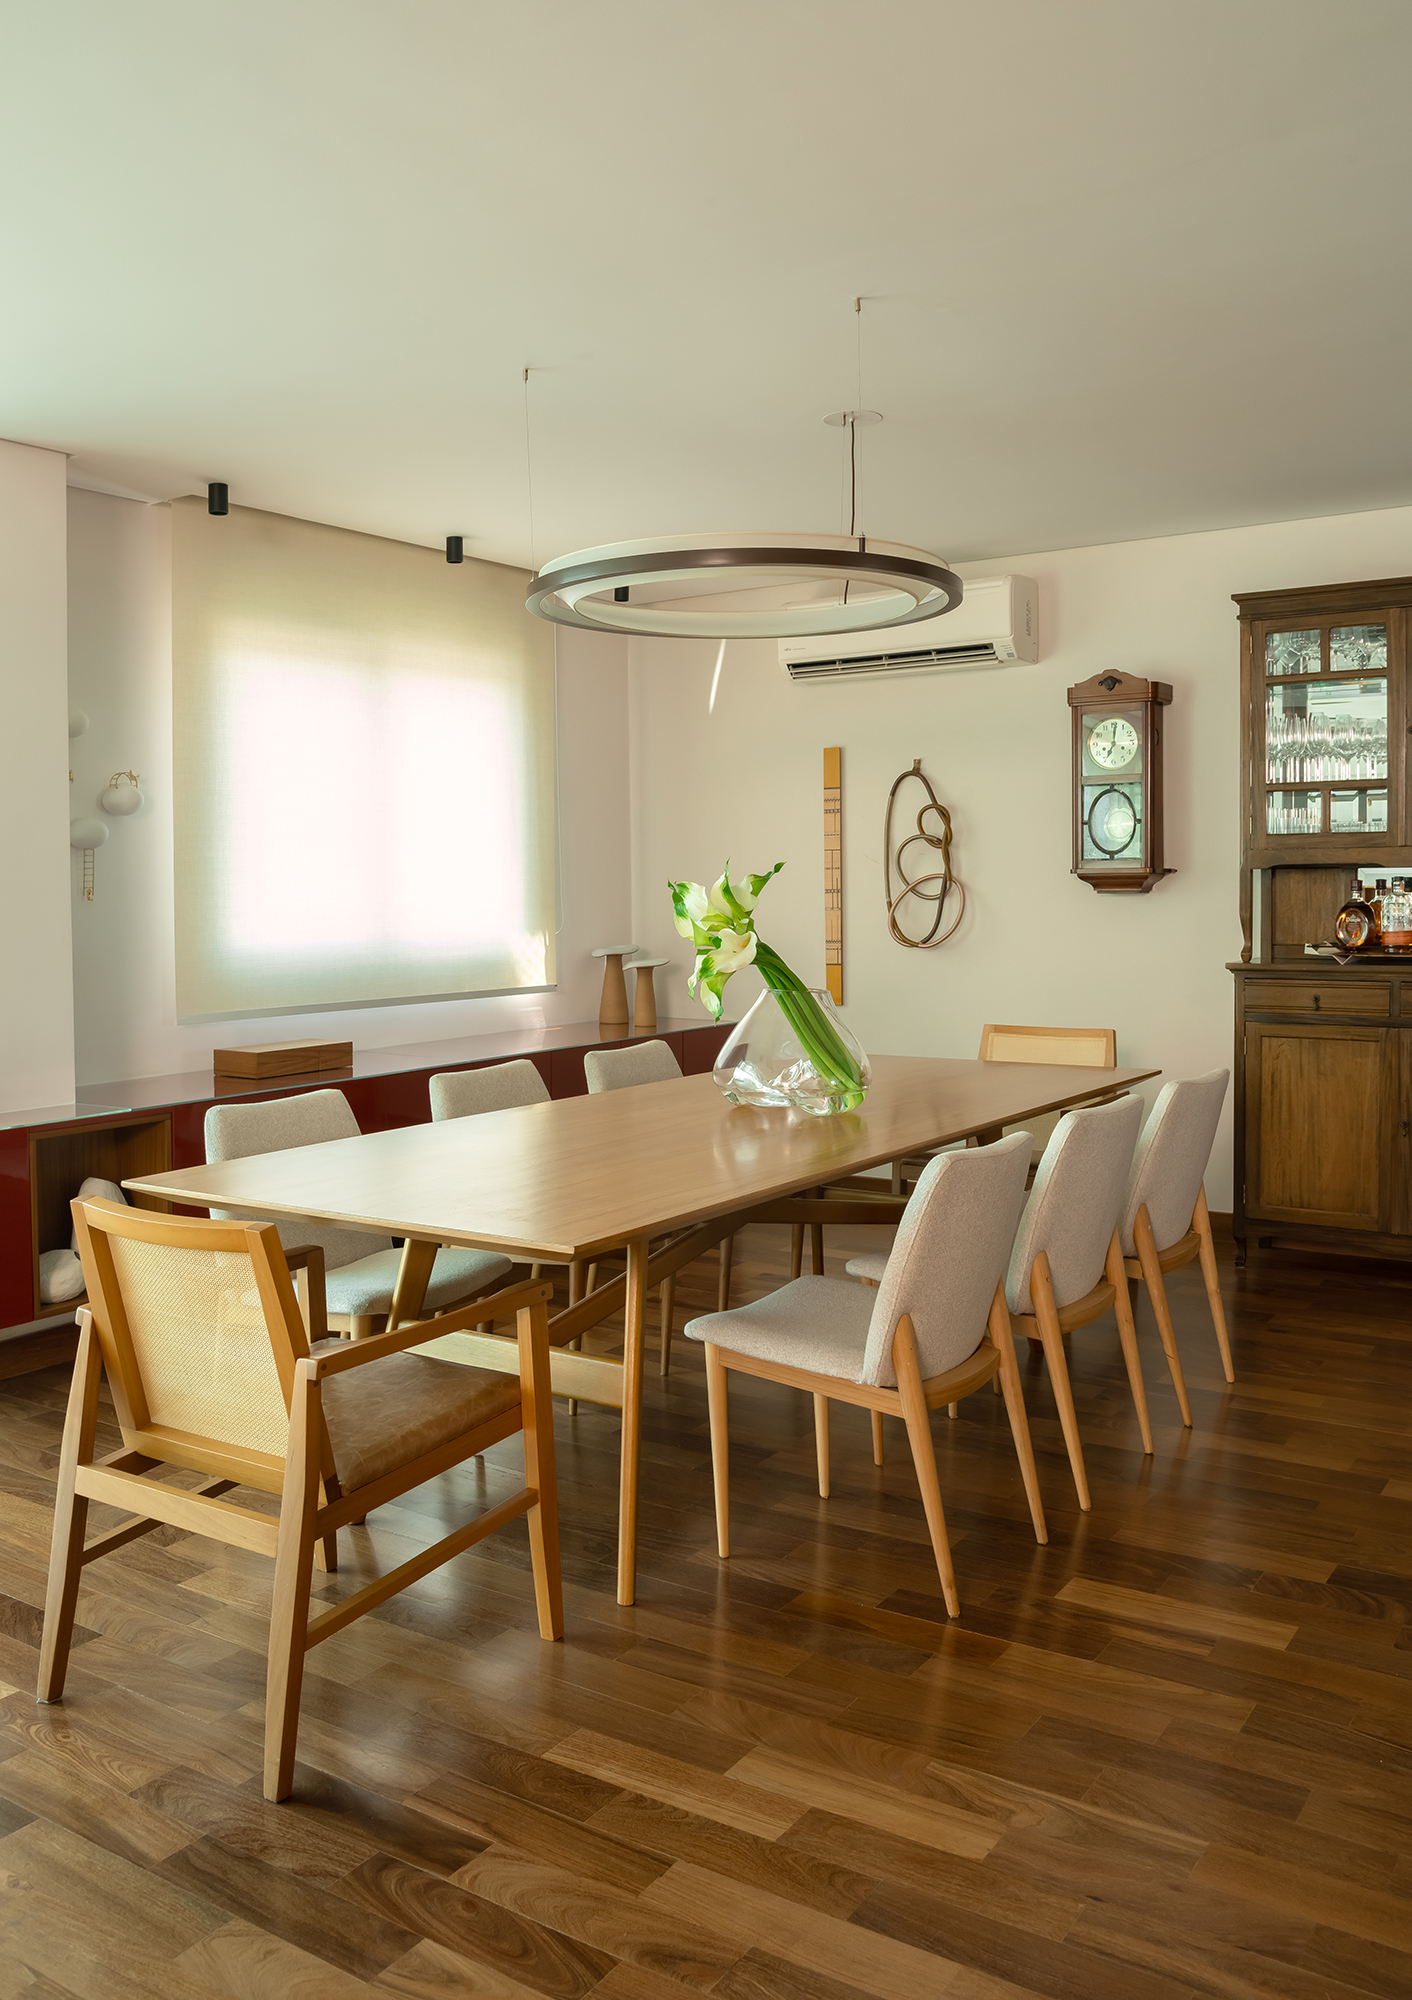 Apartamento de 188 m² ganha dois cooktops na cozinha e balanços na sala, Projeto Raízes Arquitetos. Na foto, sala de jantar com cristaleira e relógio antigo.